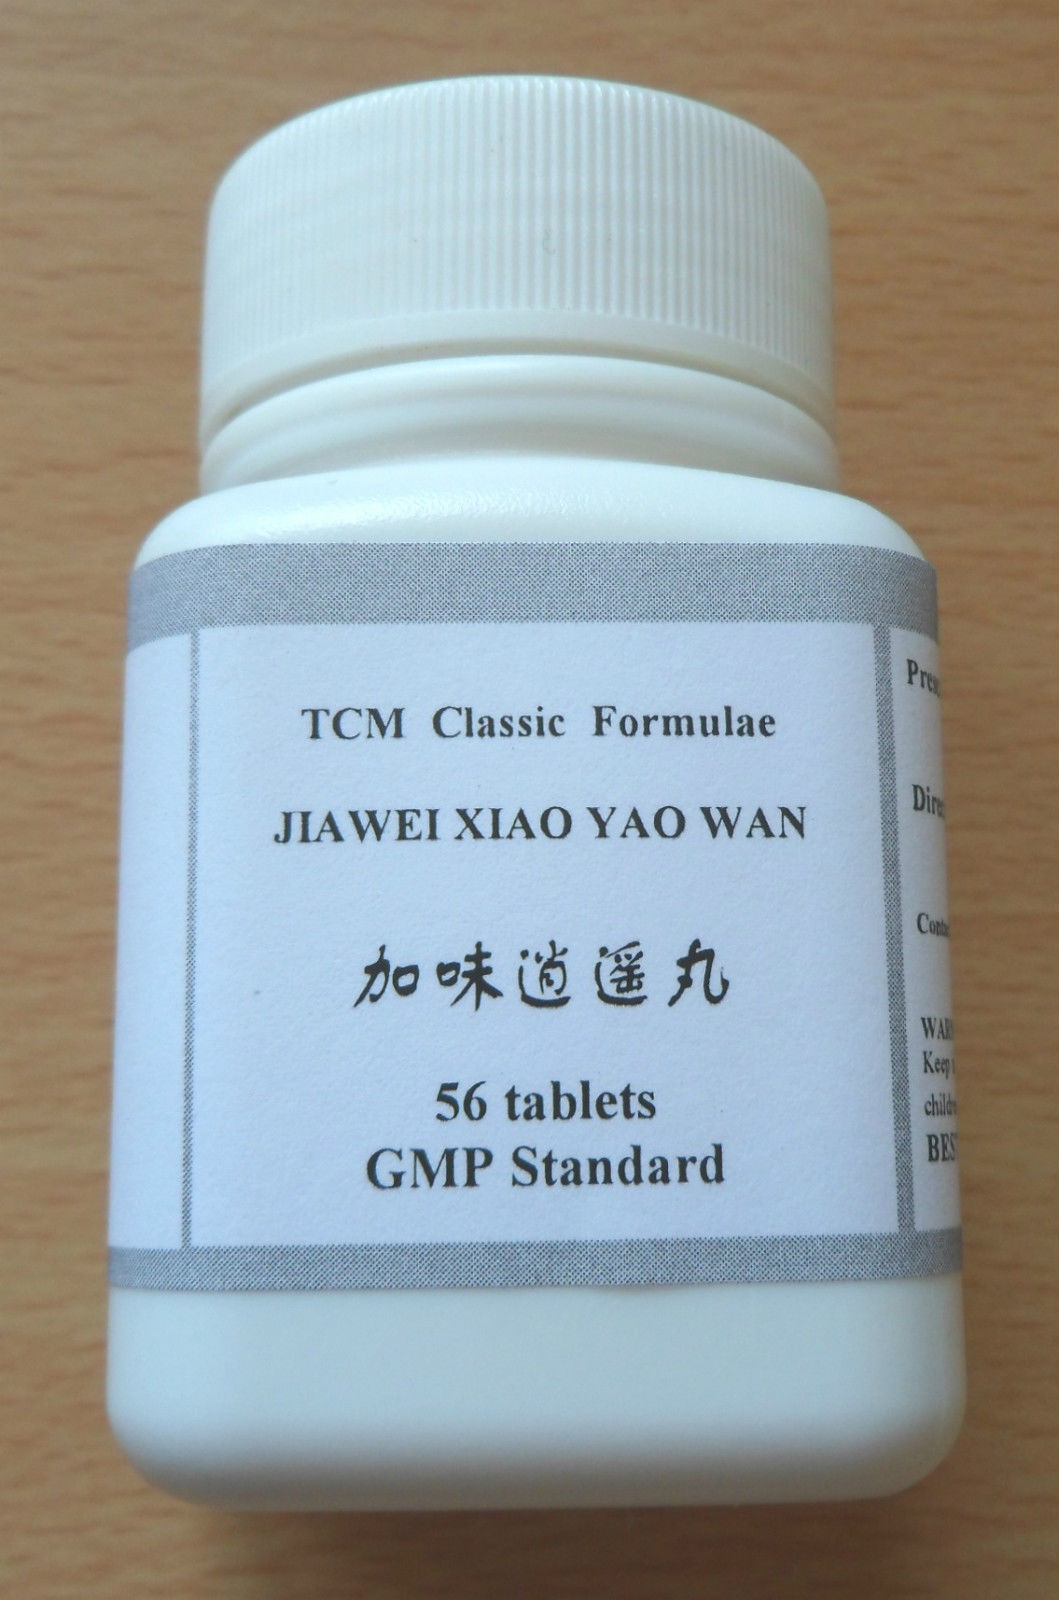 8 x Jia Wei Xiao Yao Wan Tablets, High Strength1:6